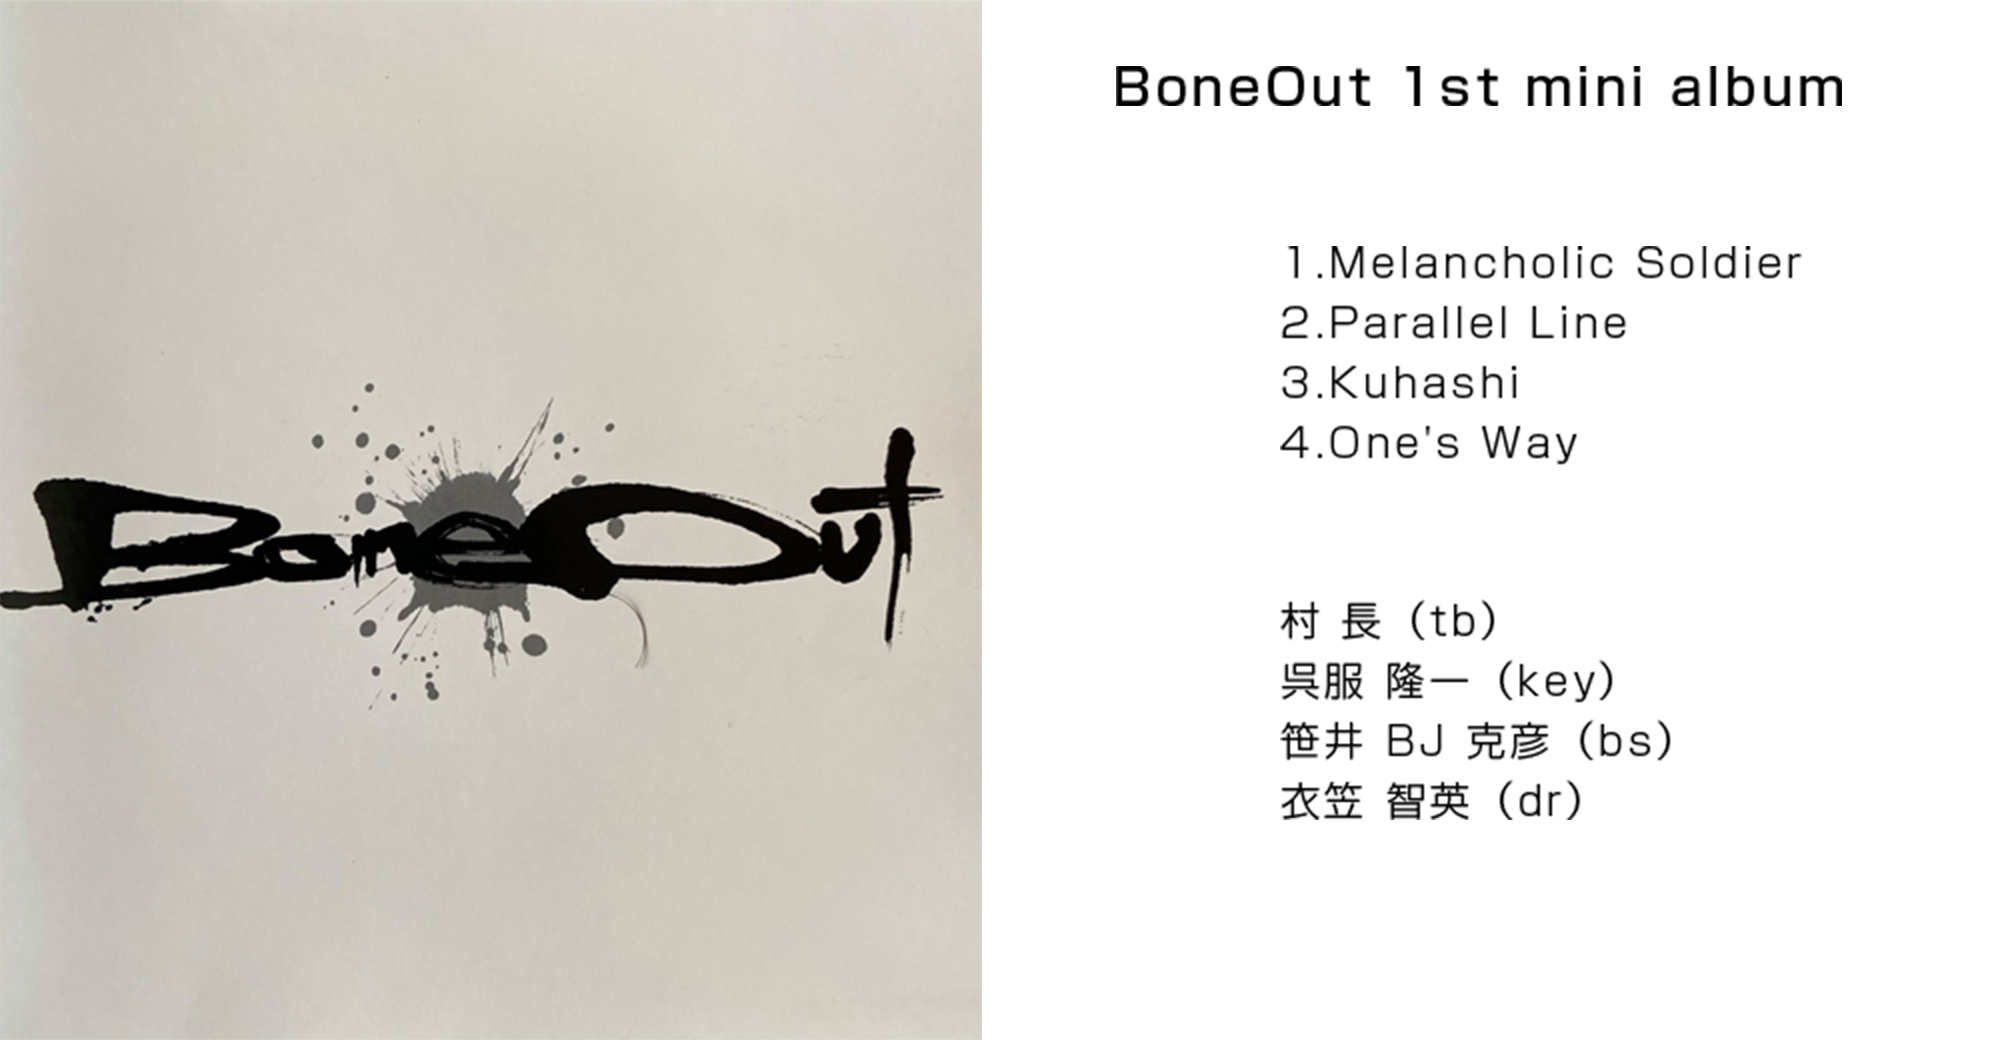 BoneOut 1st mini album